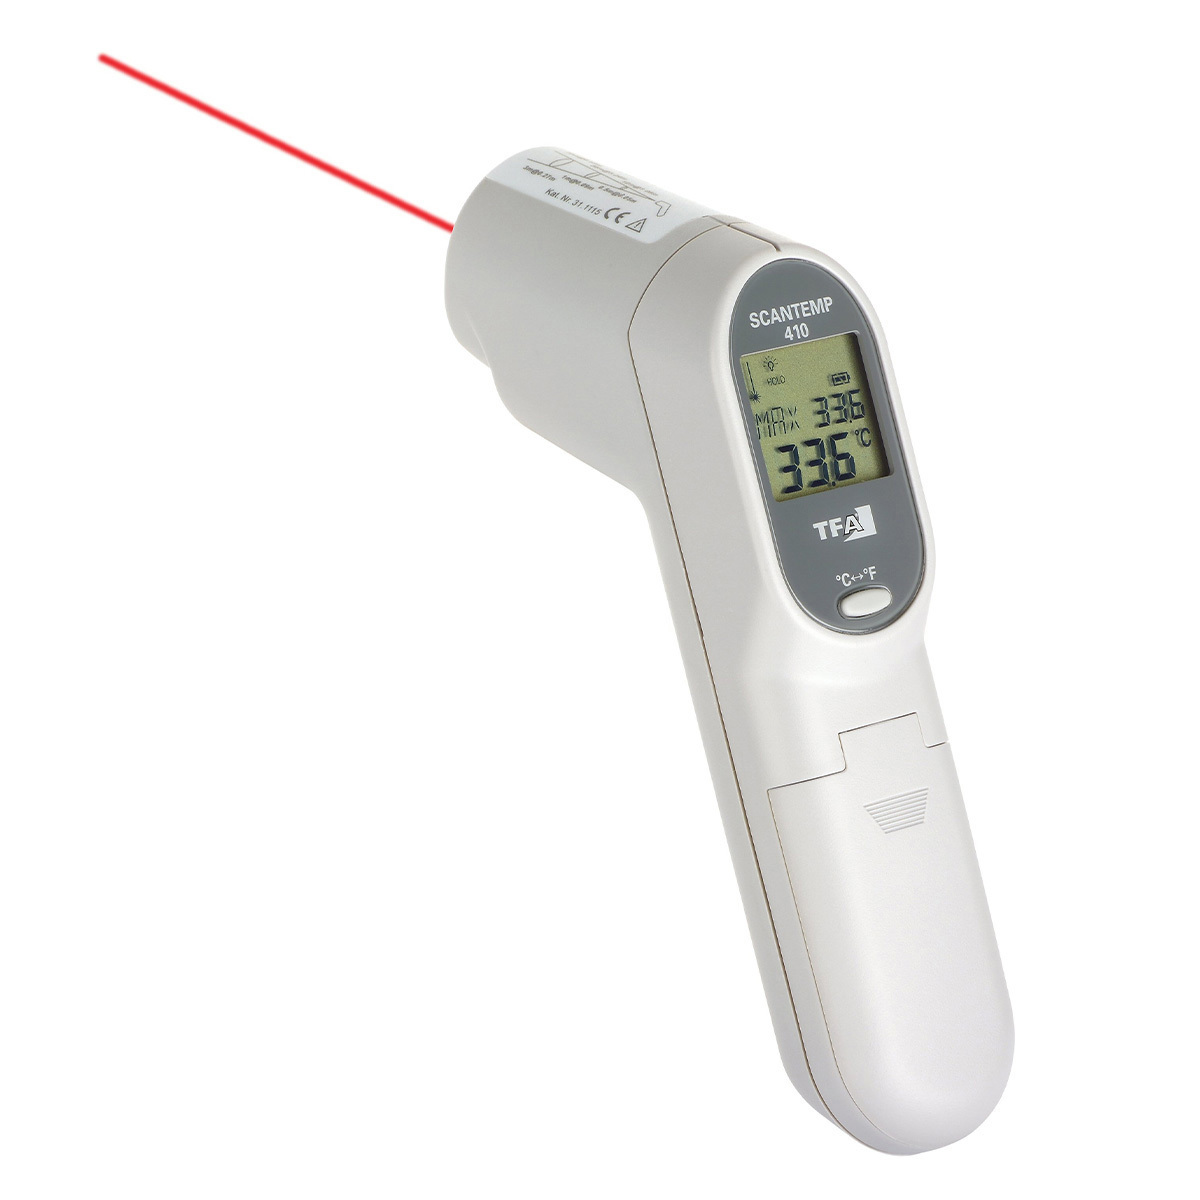 Cardinal ScanTemp 410 Handheld Infrared Thermometer Range 33°C to 500°C